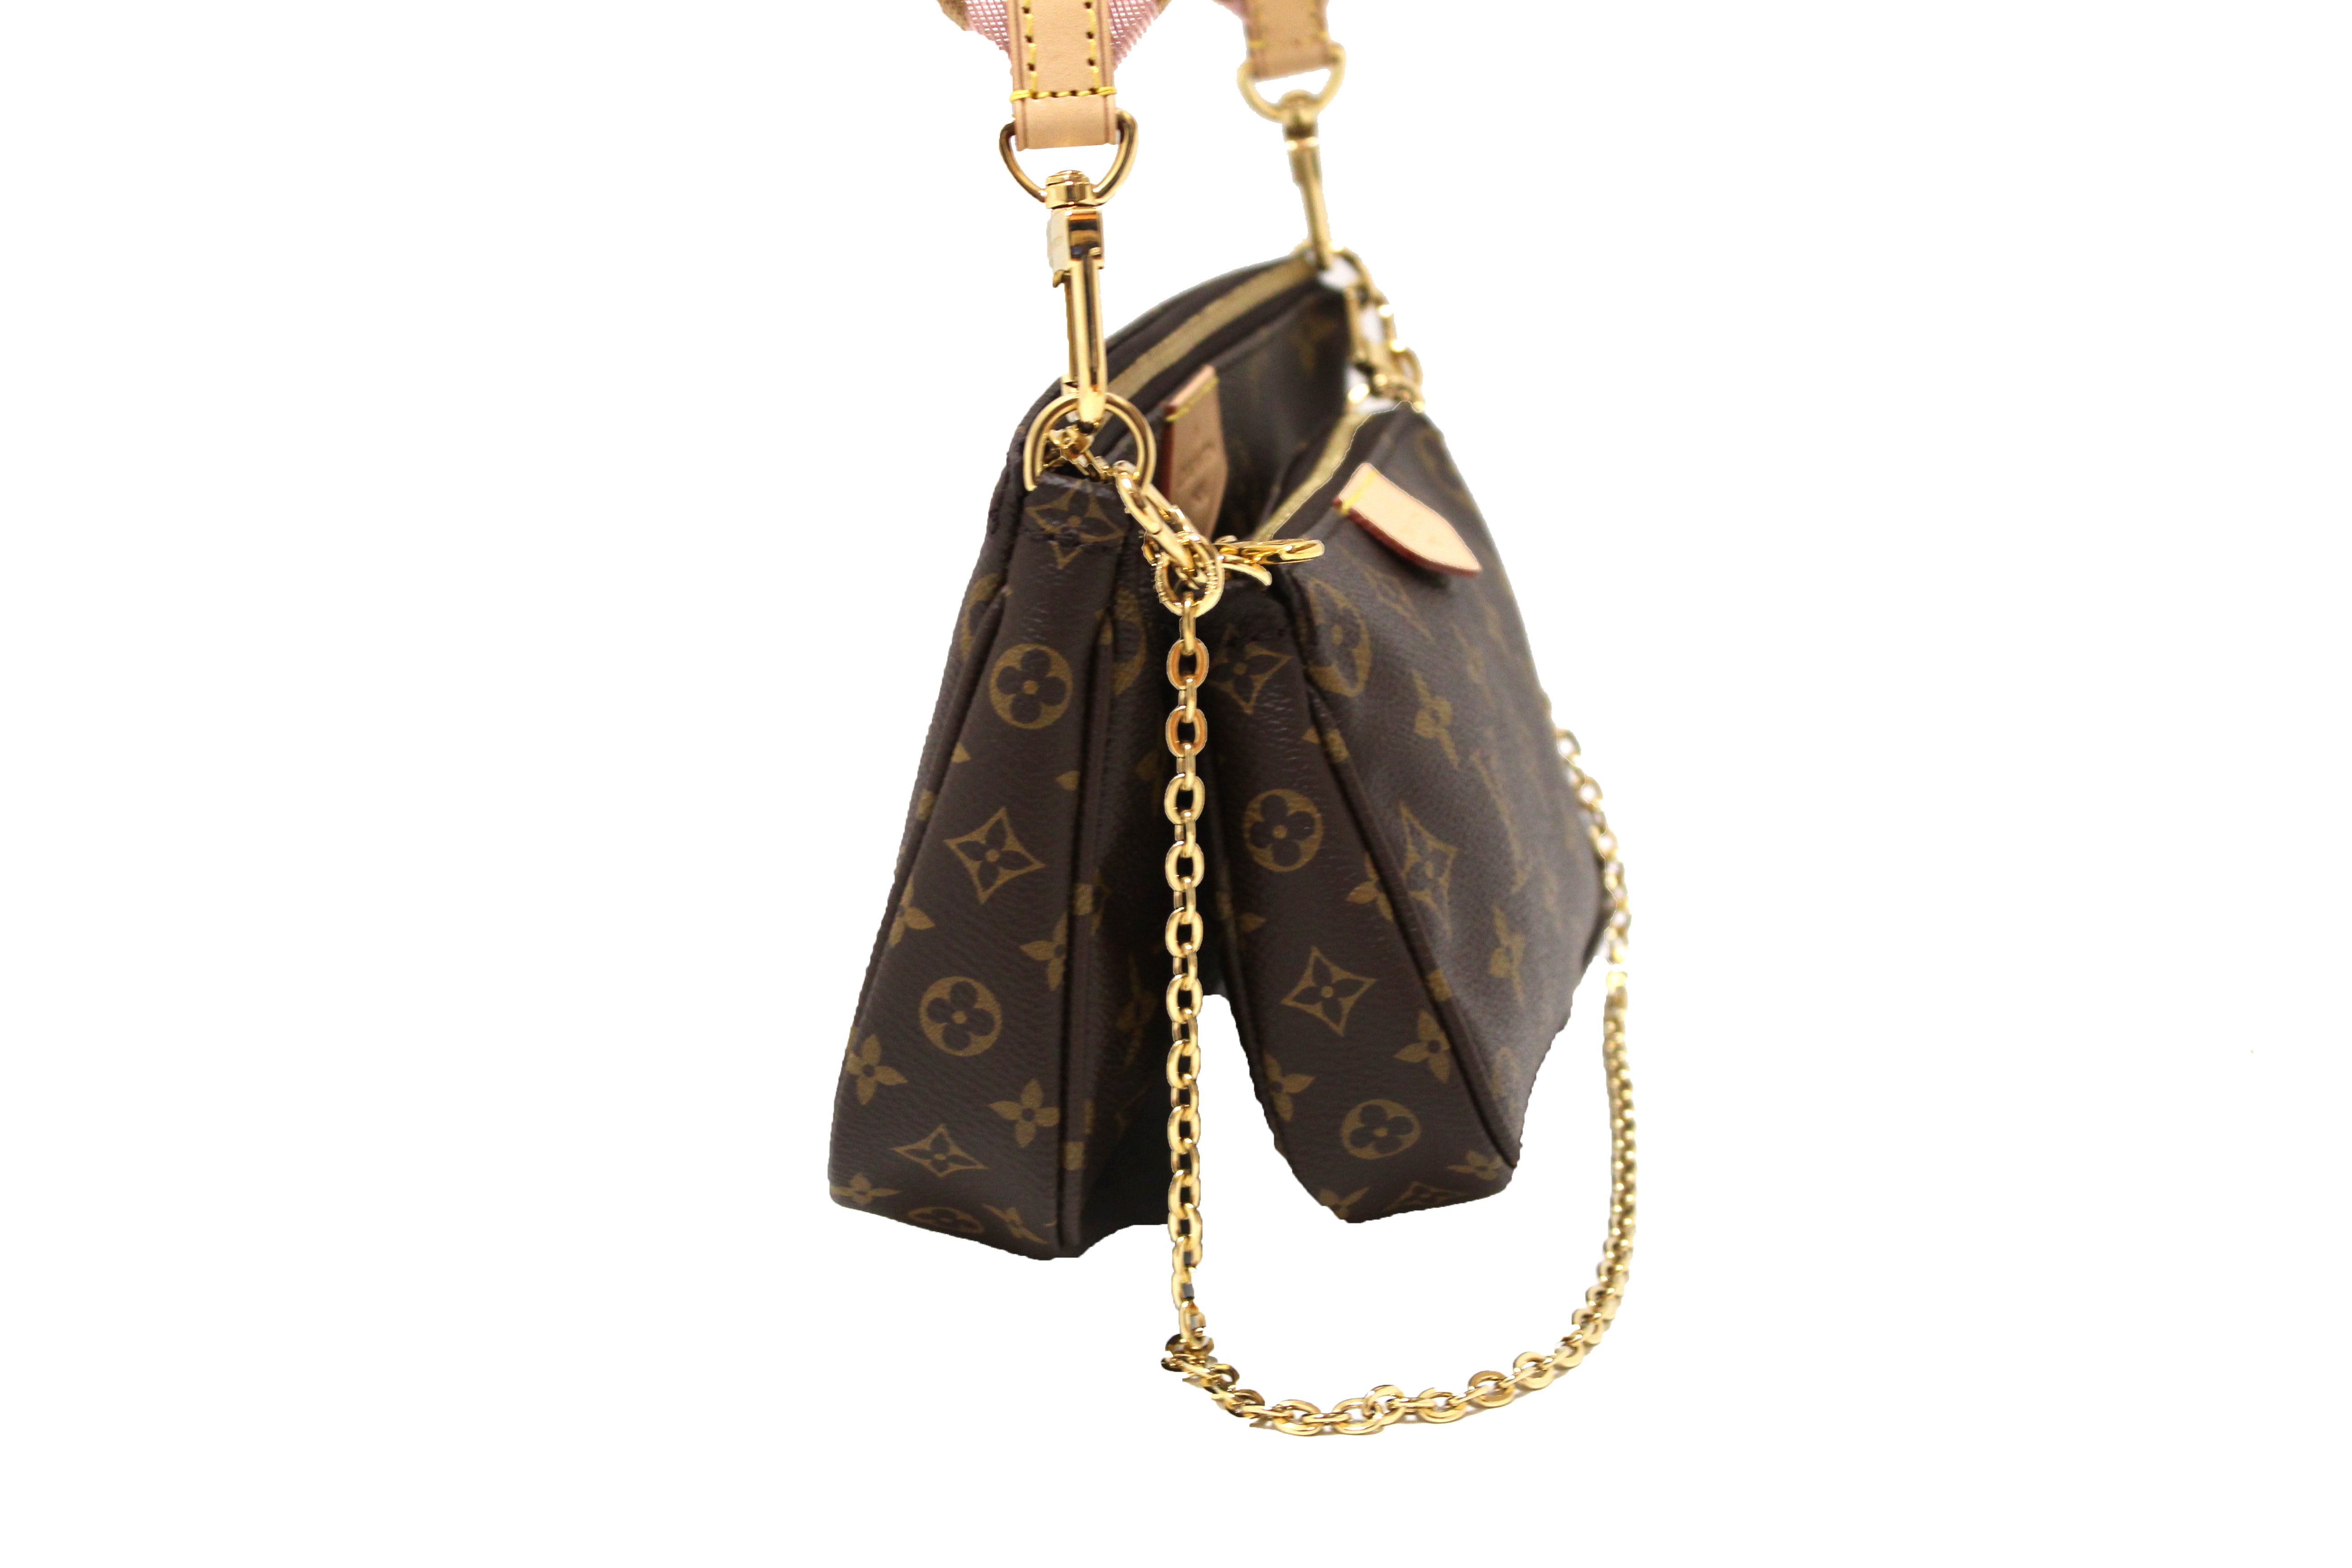 Louis Vuitton Monceau an Alternative to the LV Pochette Métis Bag Purse 💼  